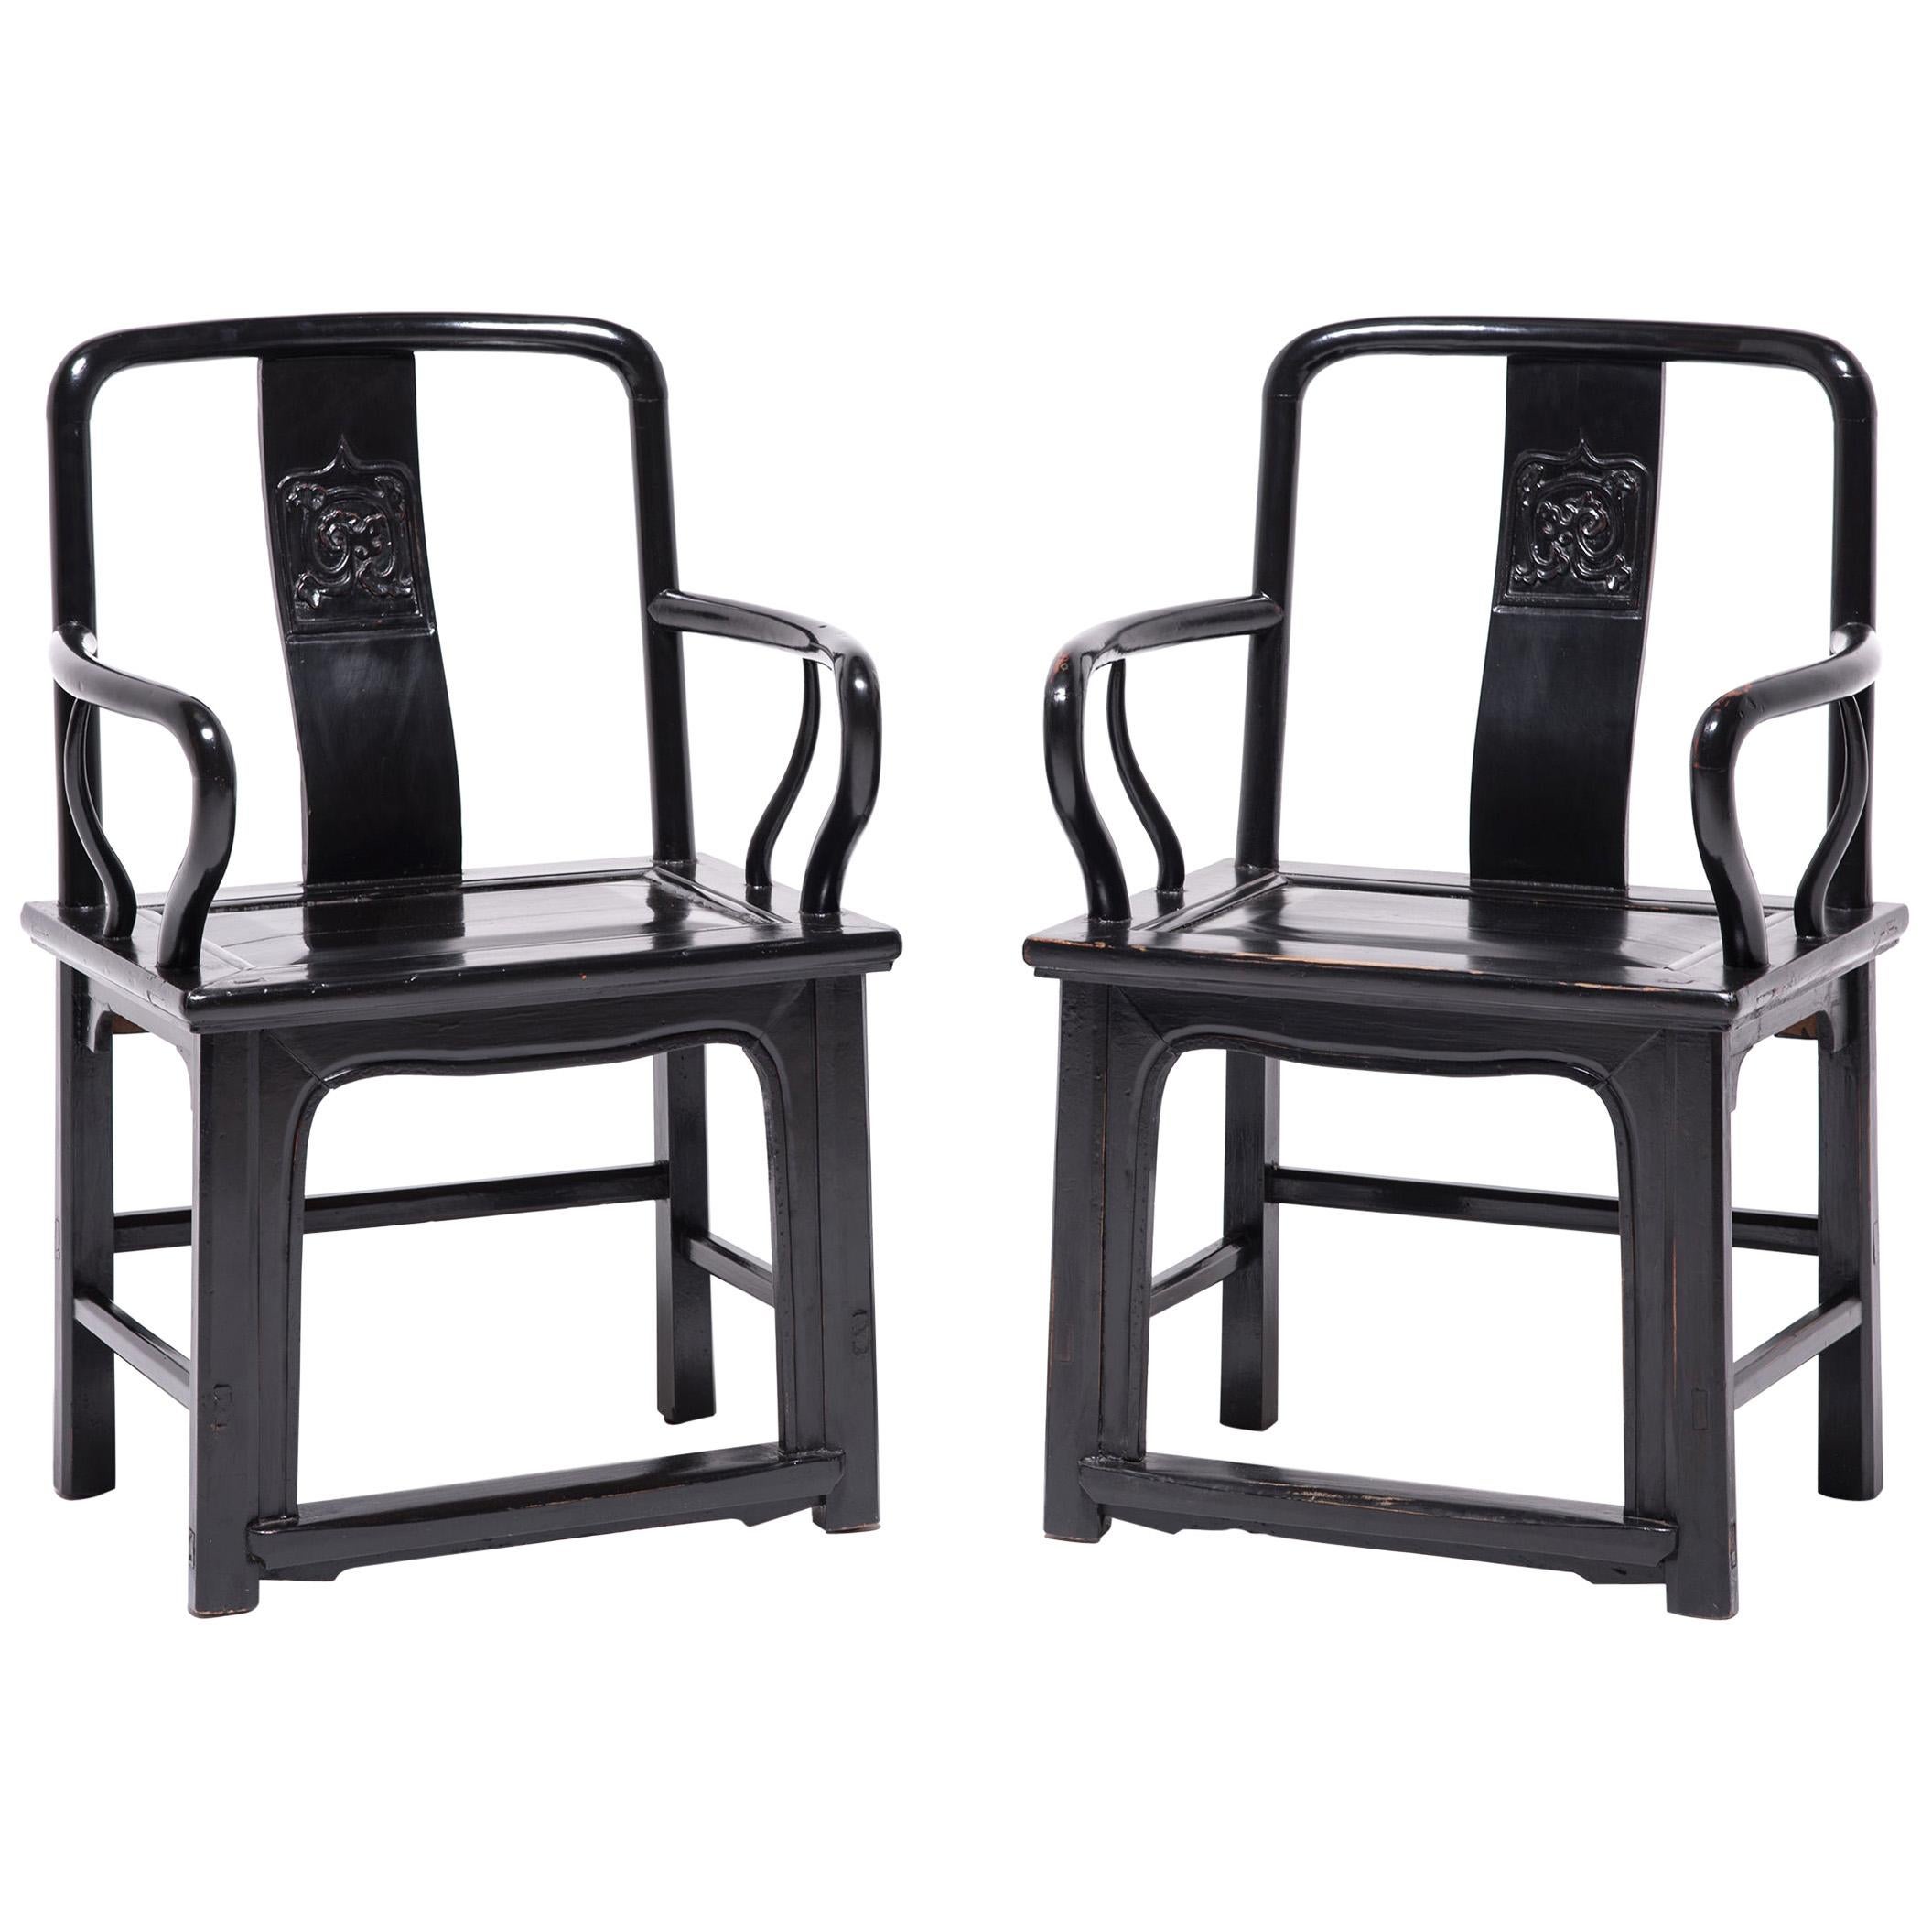 Pair of Chinese Black Guanmaoyi Chairs, circa 1850